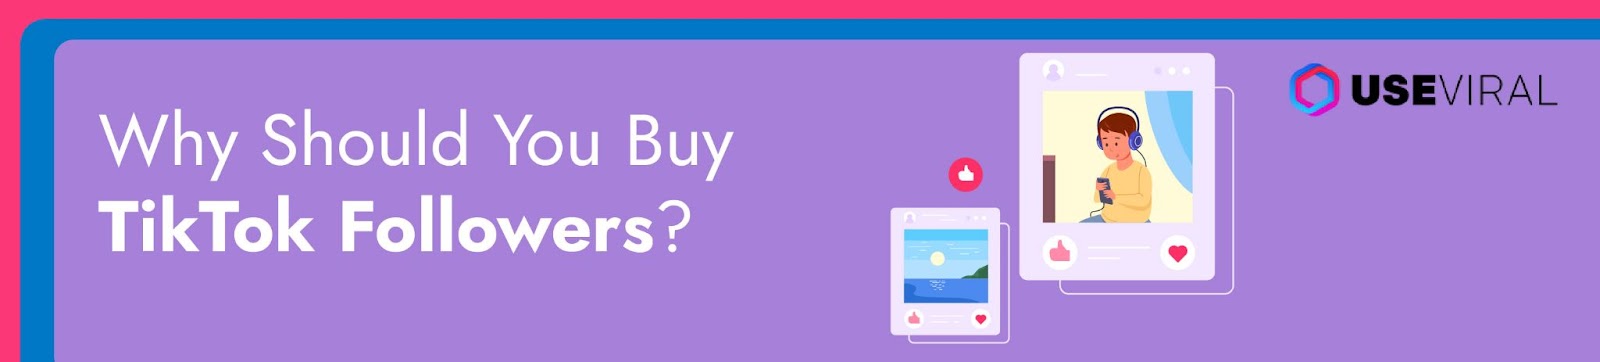 Why Should You Buy TikTok Followers?